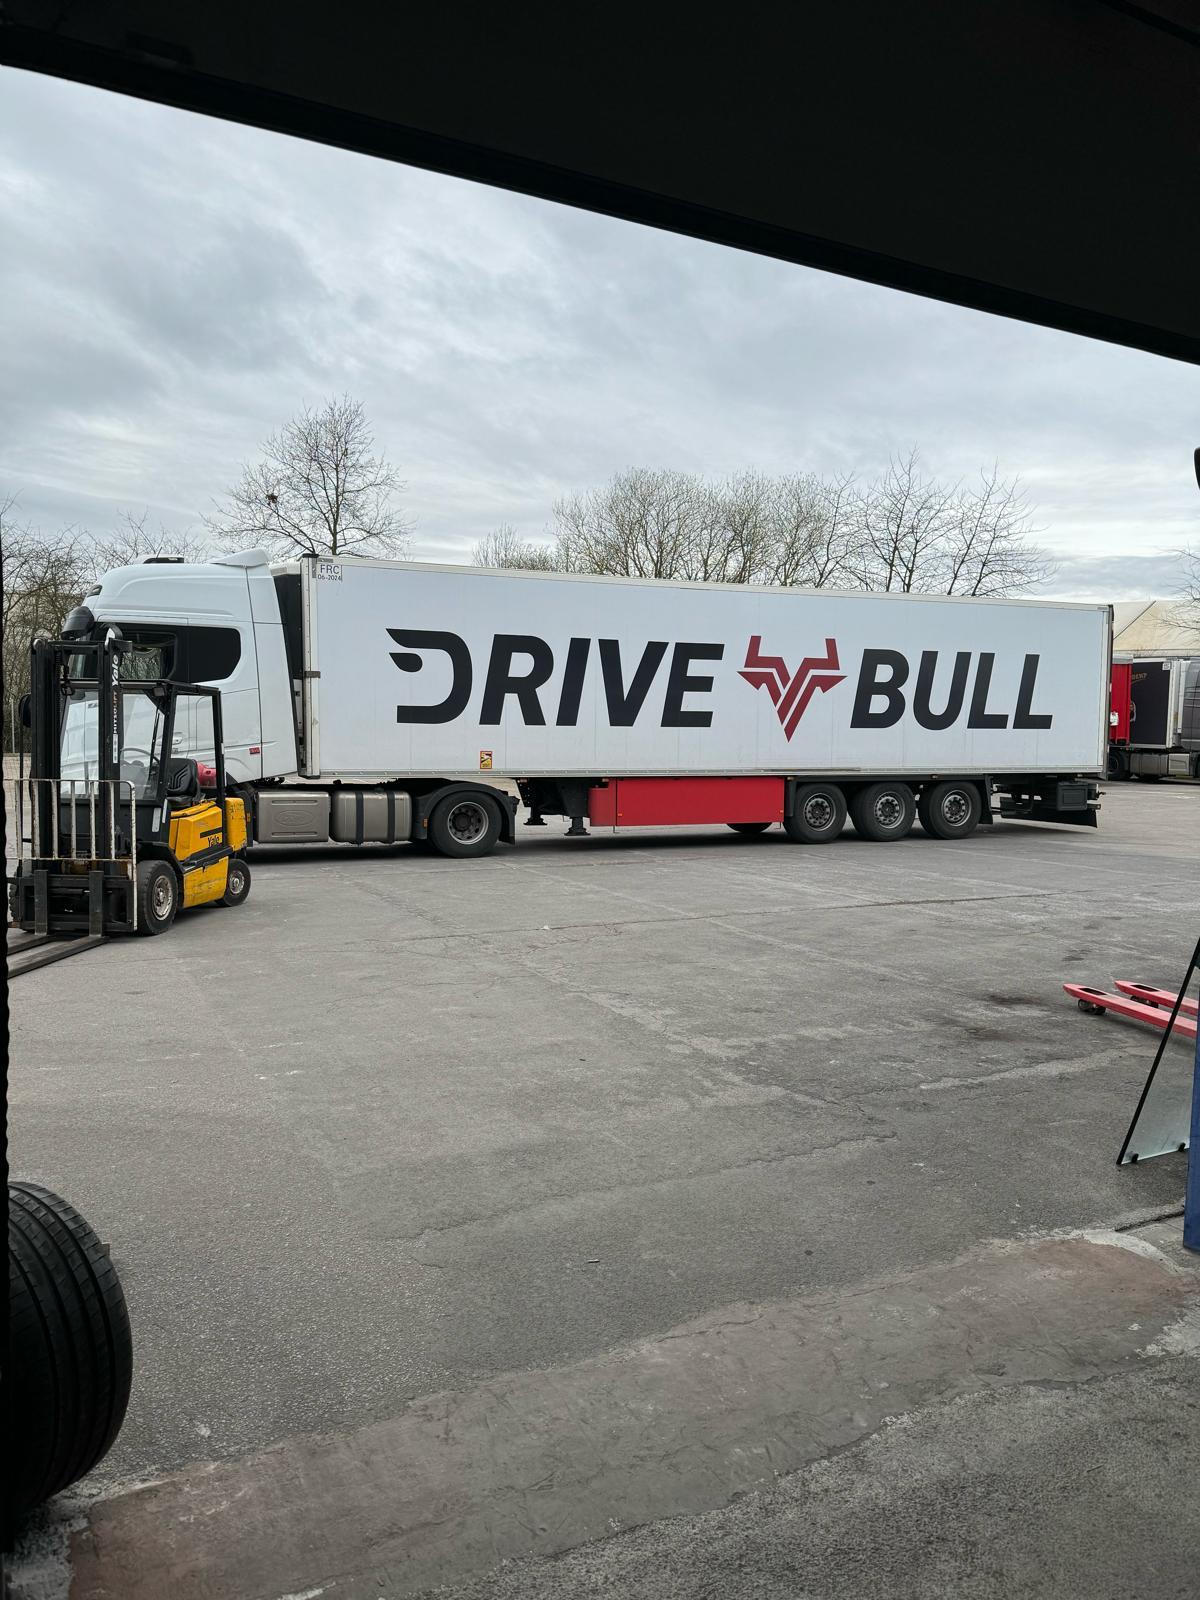 Drivebull Spedition & Logistic GmbH, Hammerwerkweg 8-8a in Willich